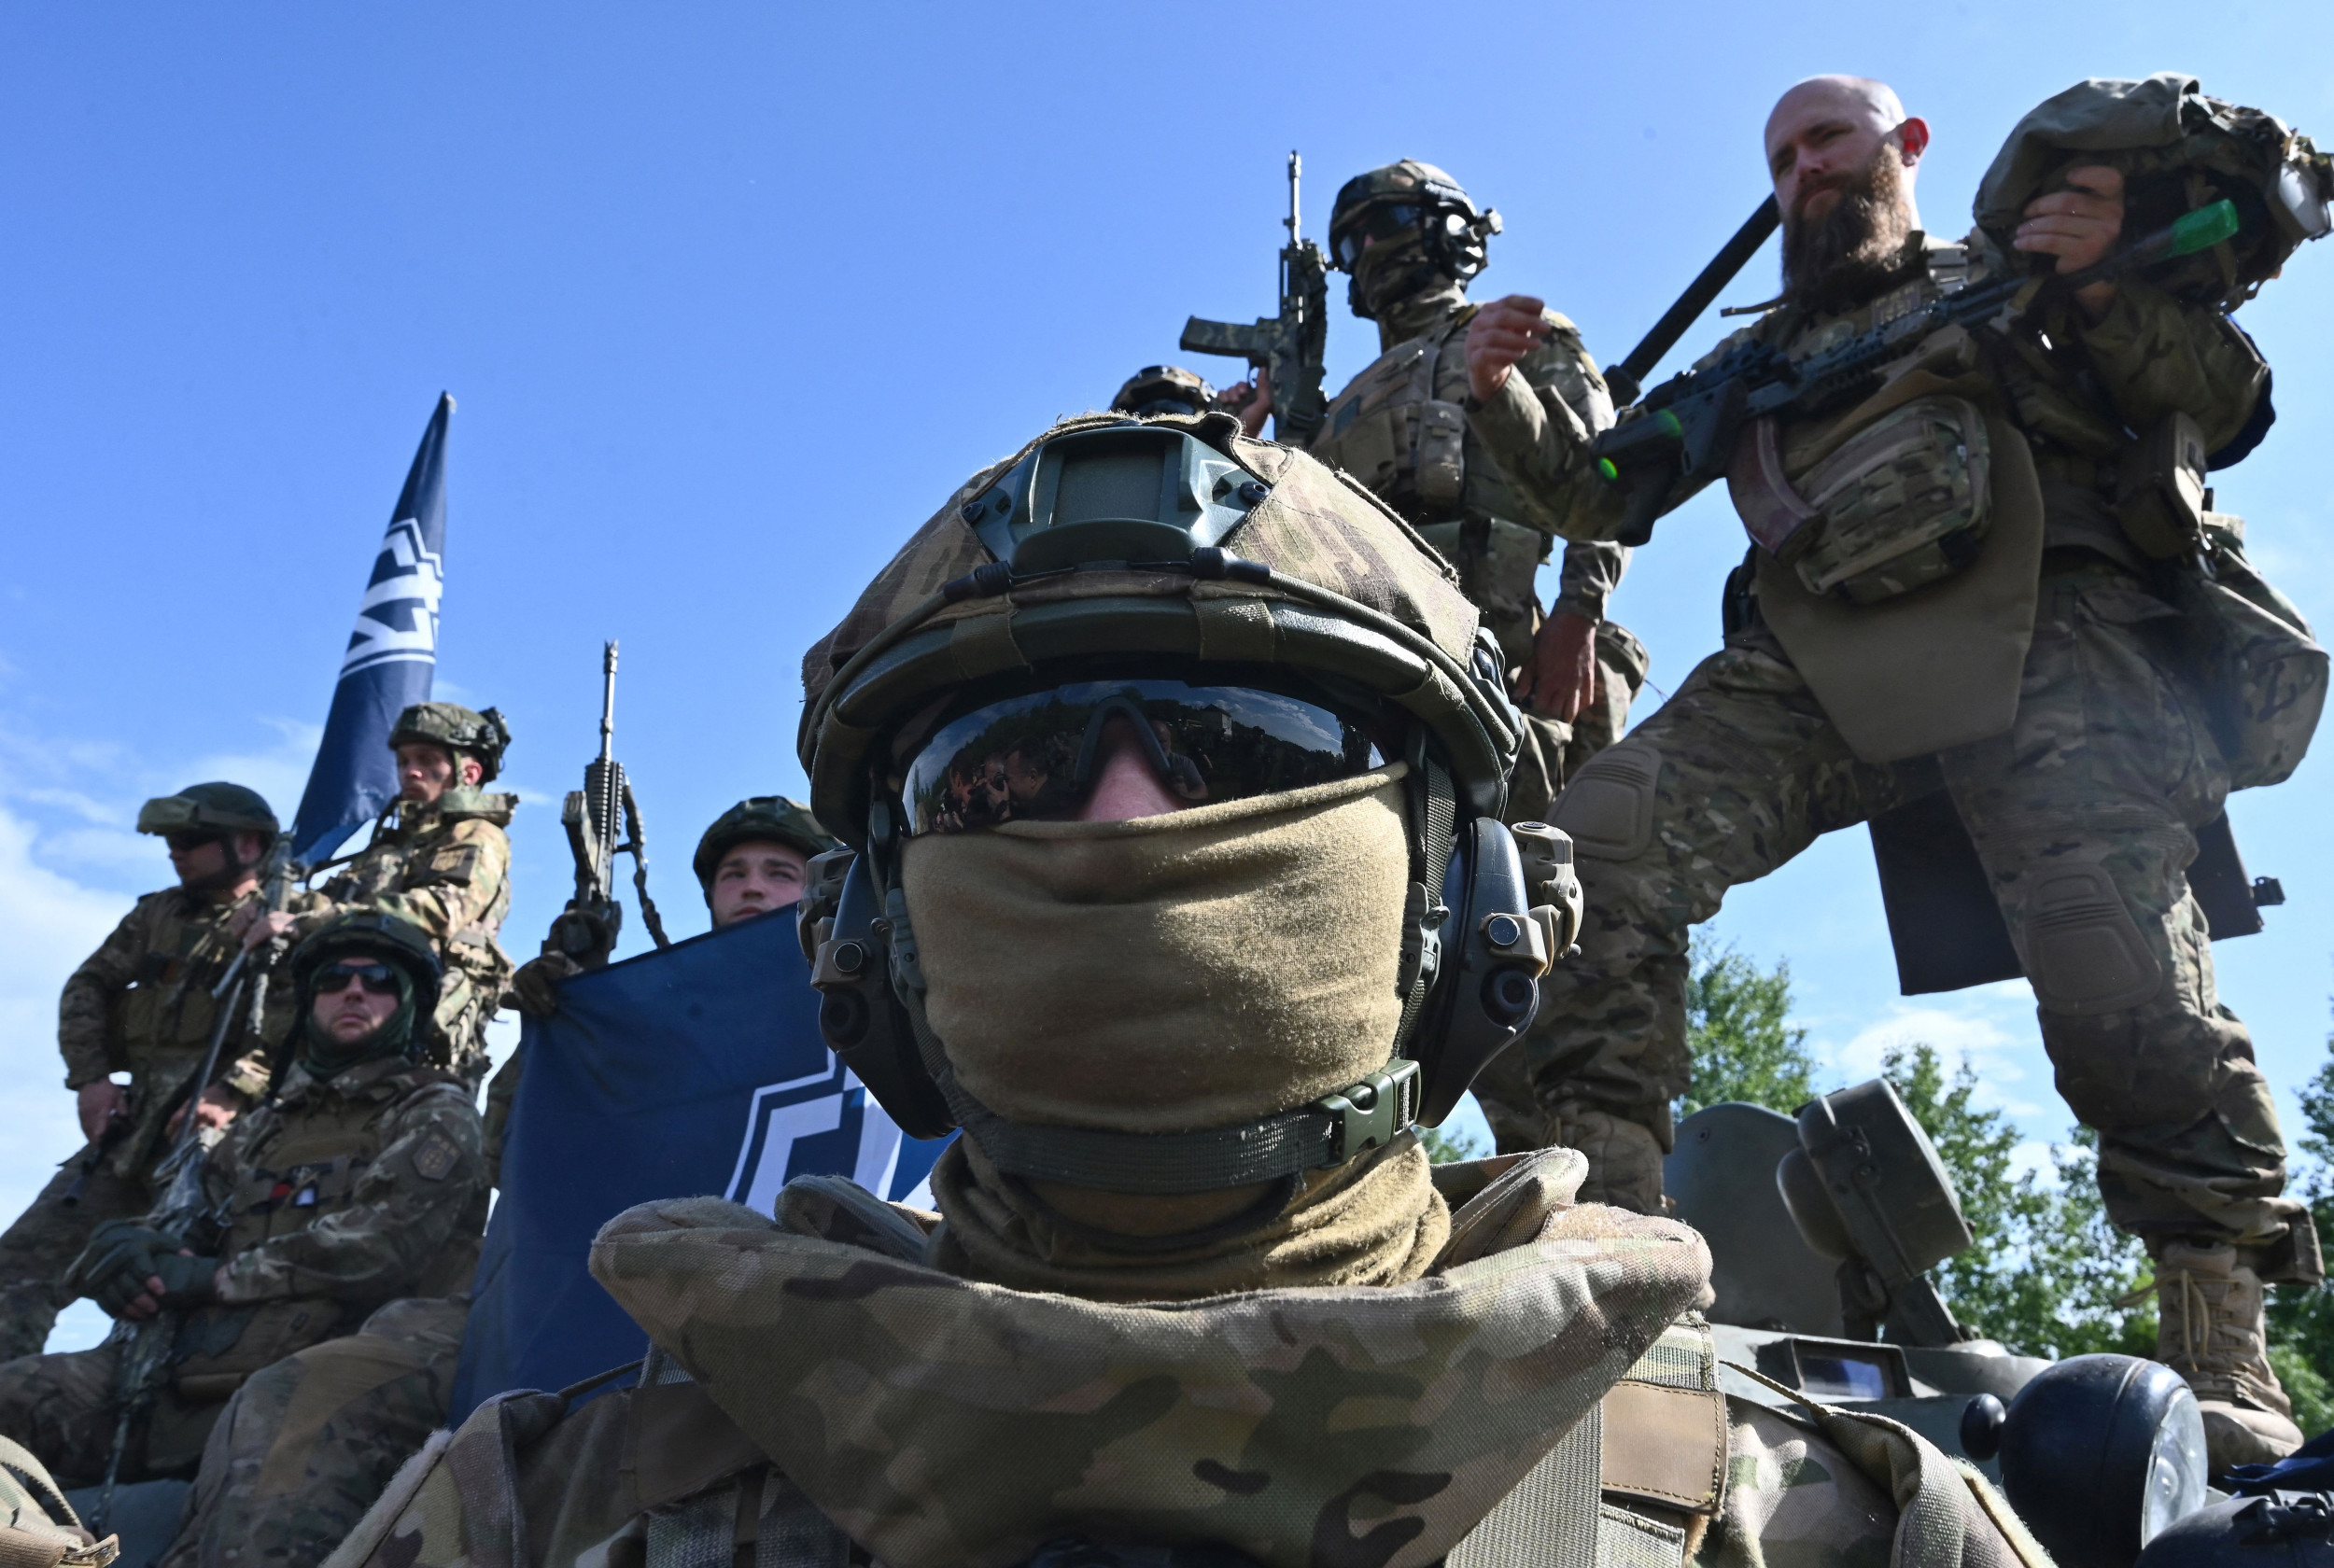 Les transfuges de Poutine combattant pour l’Ukraine invitent les troupes de Wagner à changer de camp